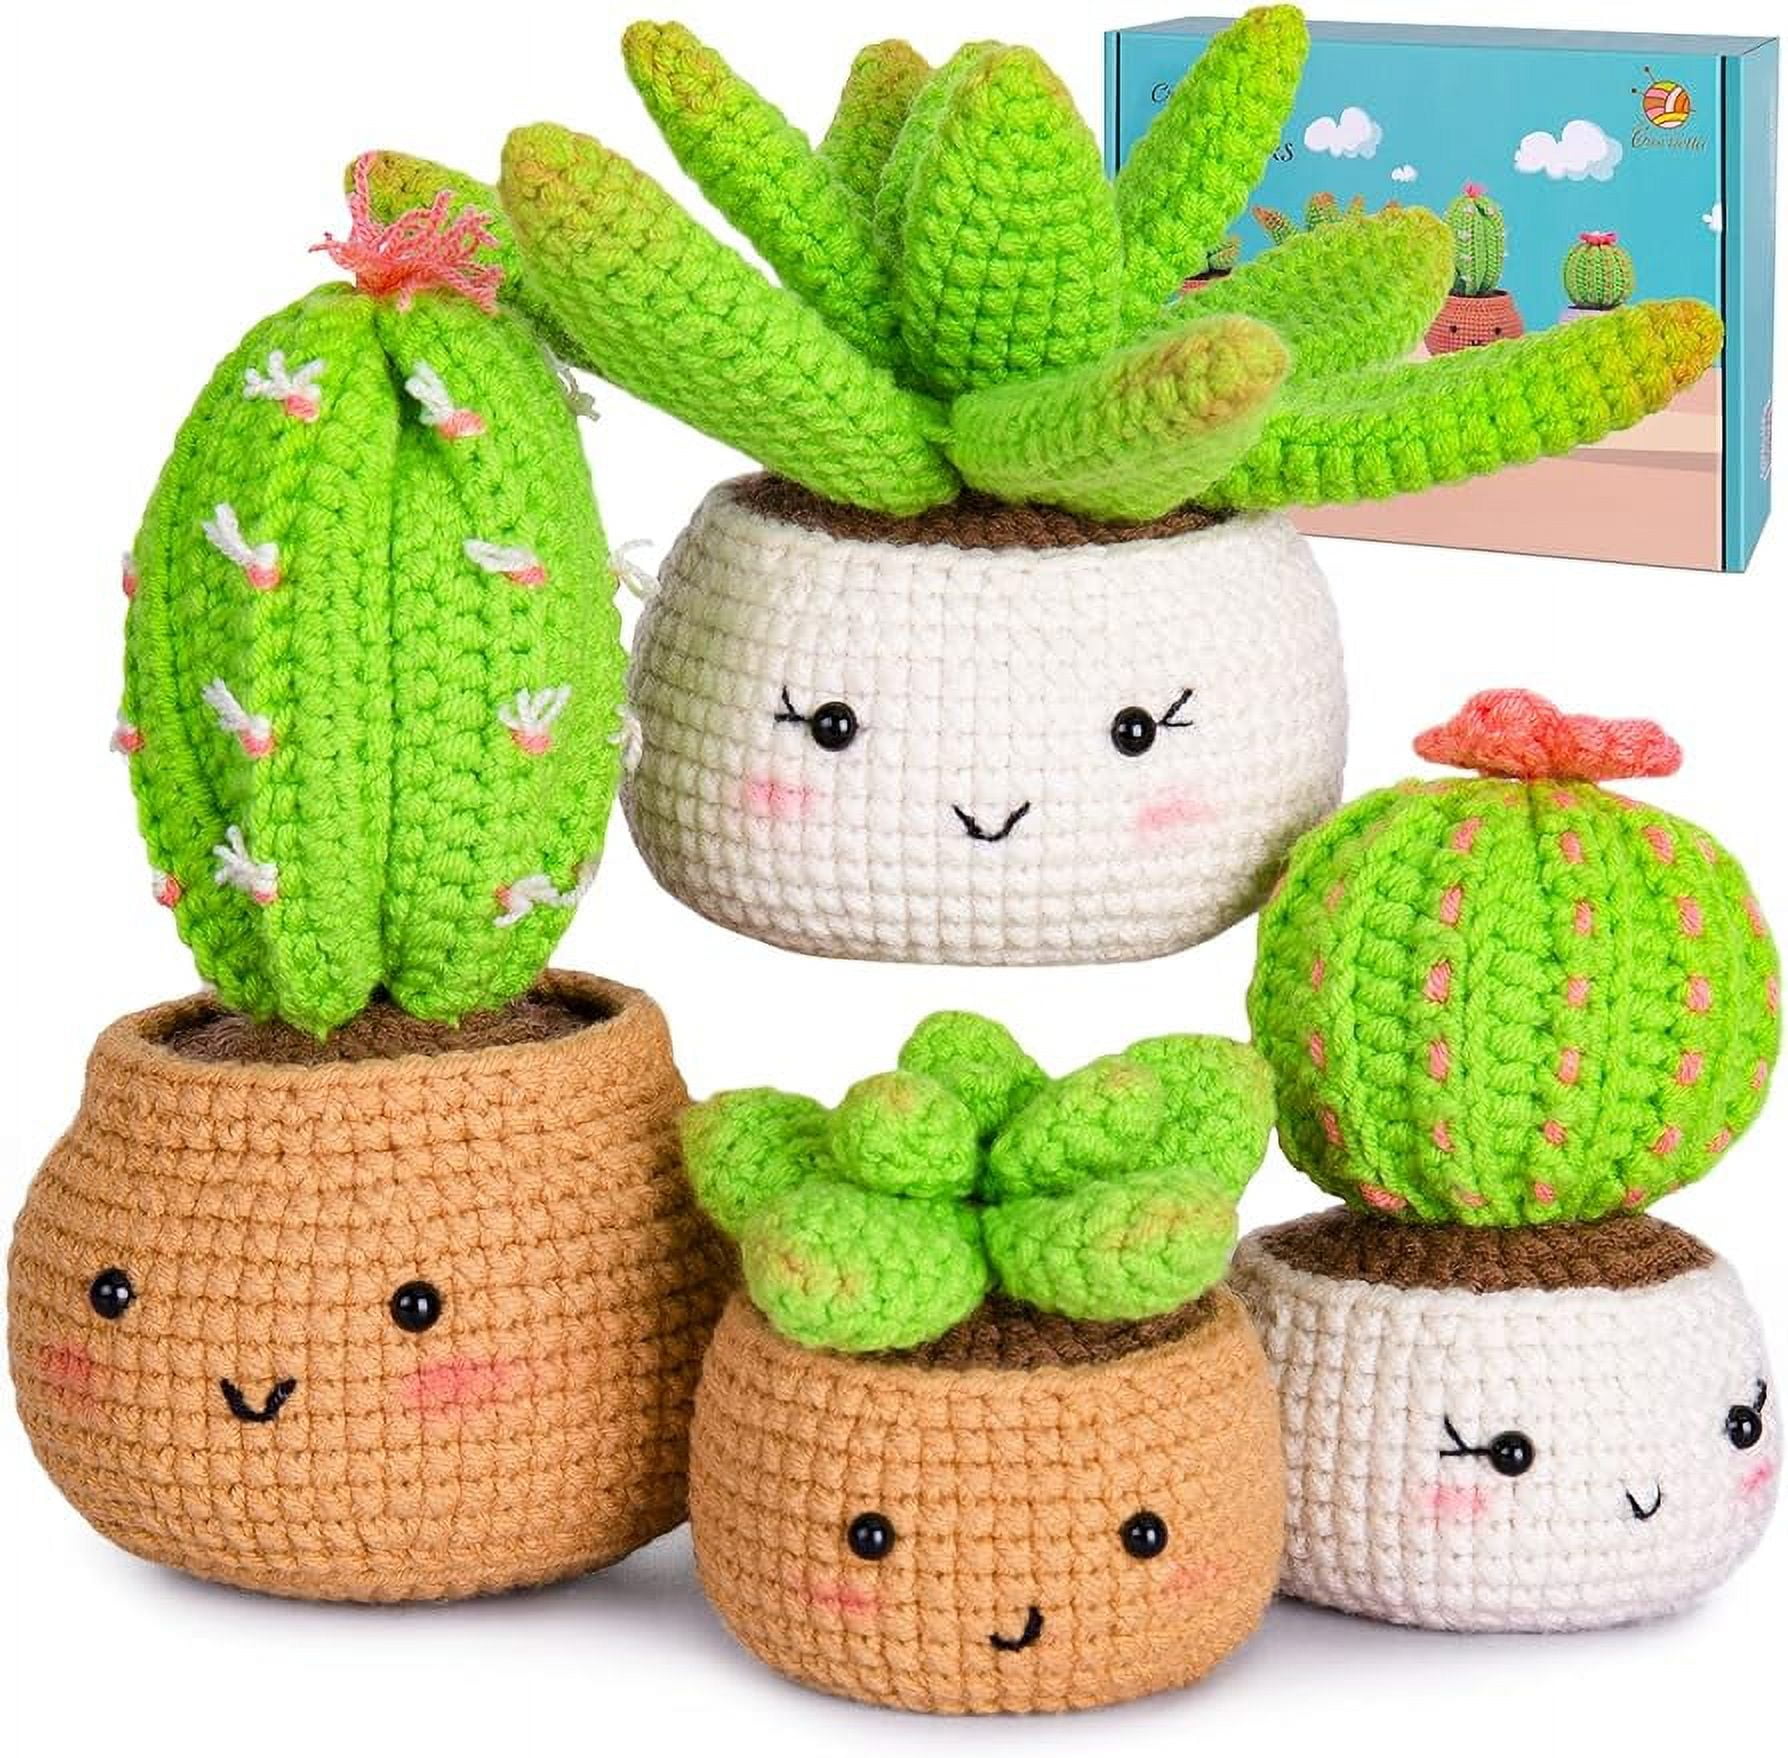 Crochet Kit For Beginners, Beginner Crochet Kit Step-by-step Video  Tutorials, Crochet Starter Kit Learn To Crochet Kits For Adults Kids  Beginners, Jumbo 3 Bee Family - Temu Bulgaria